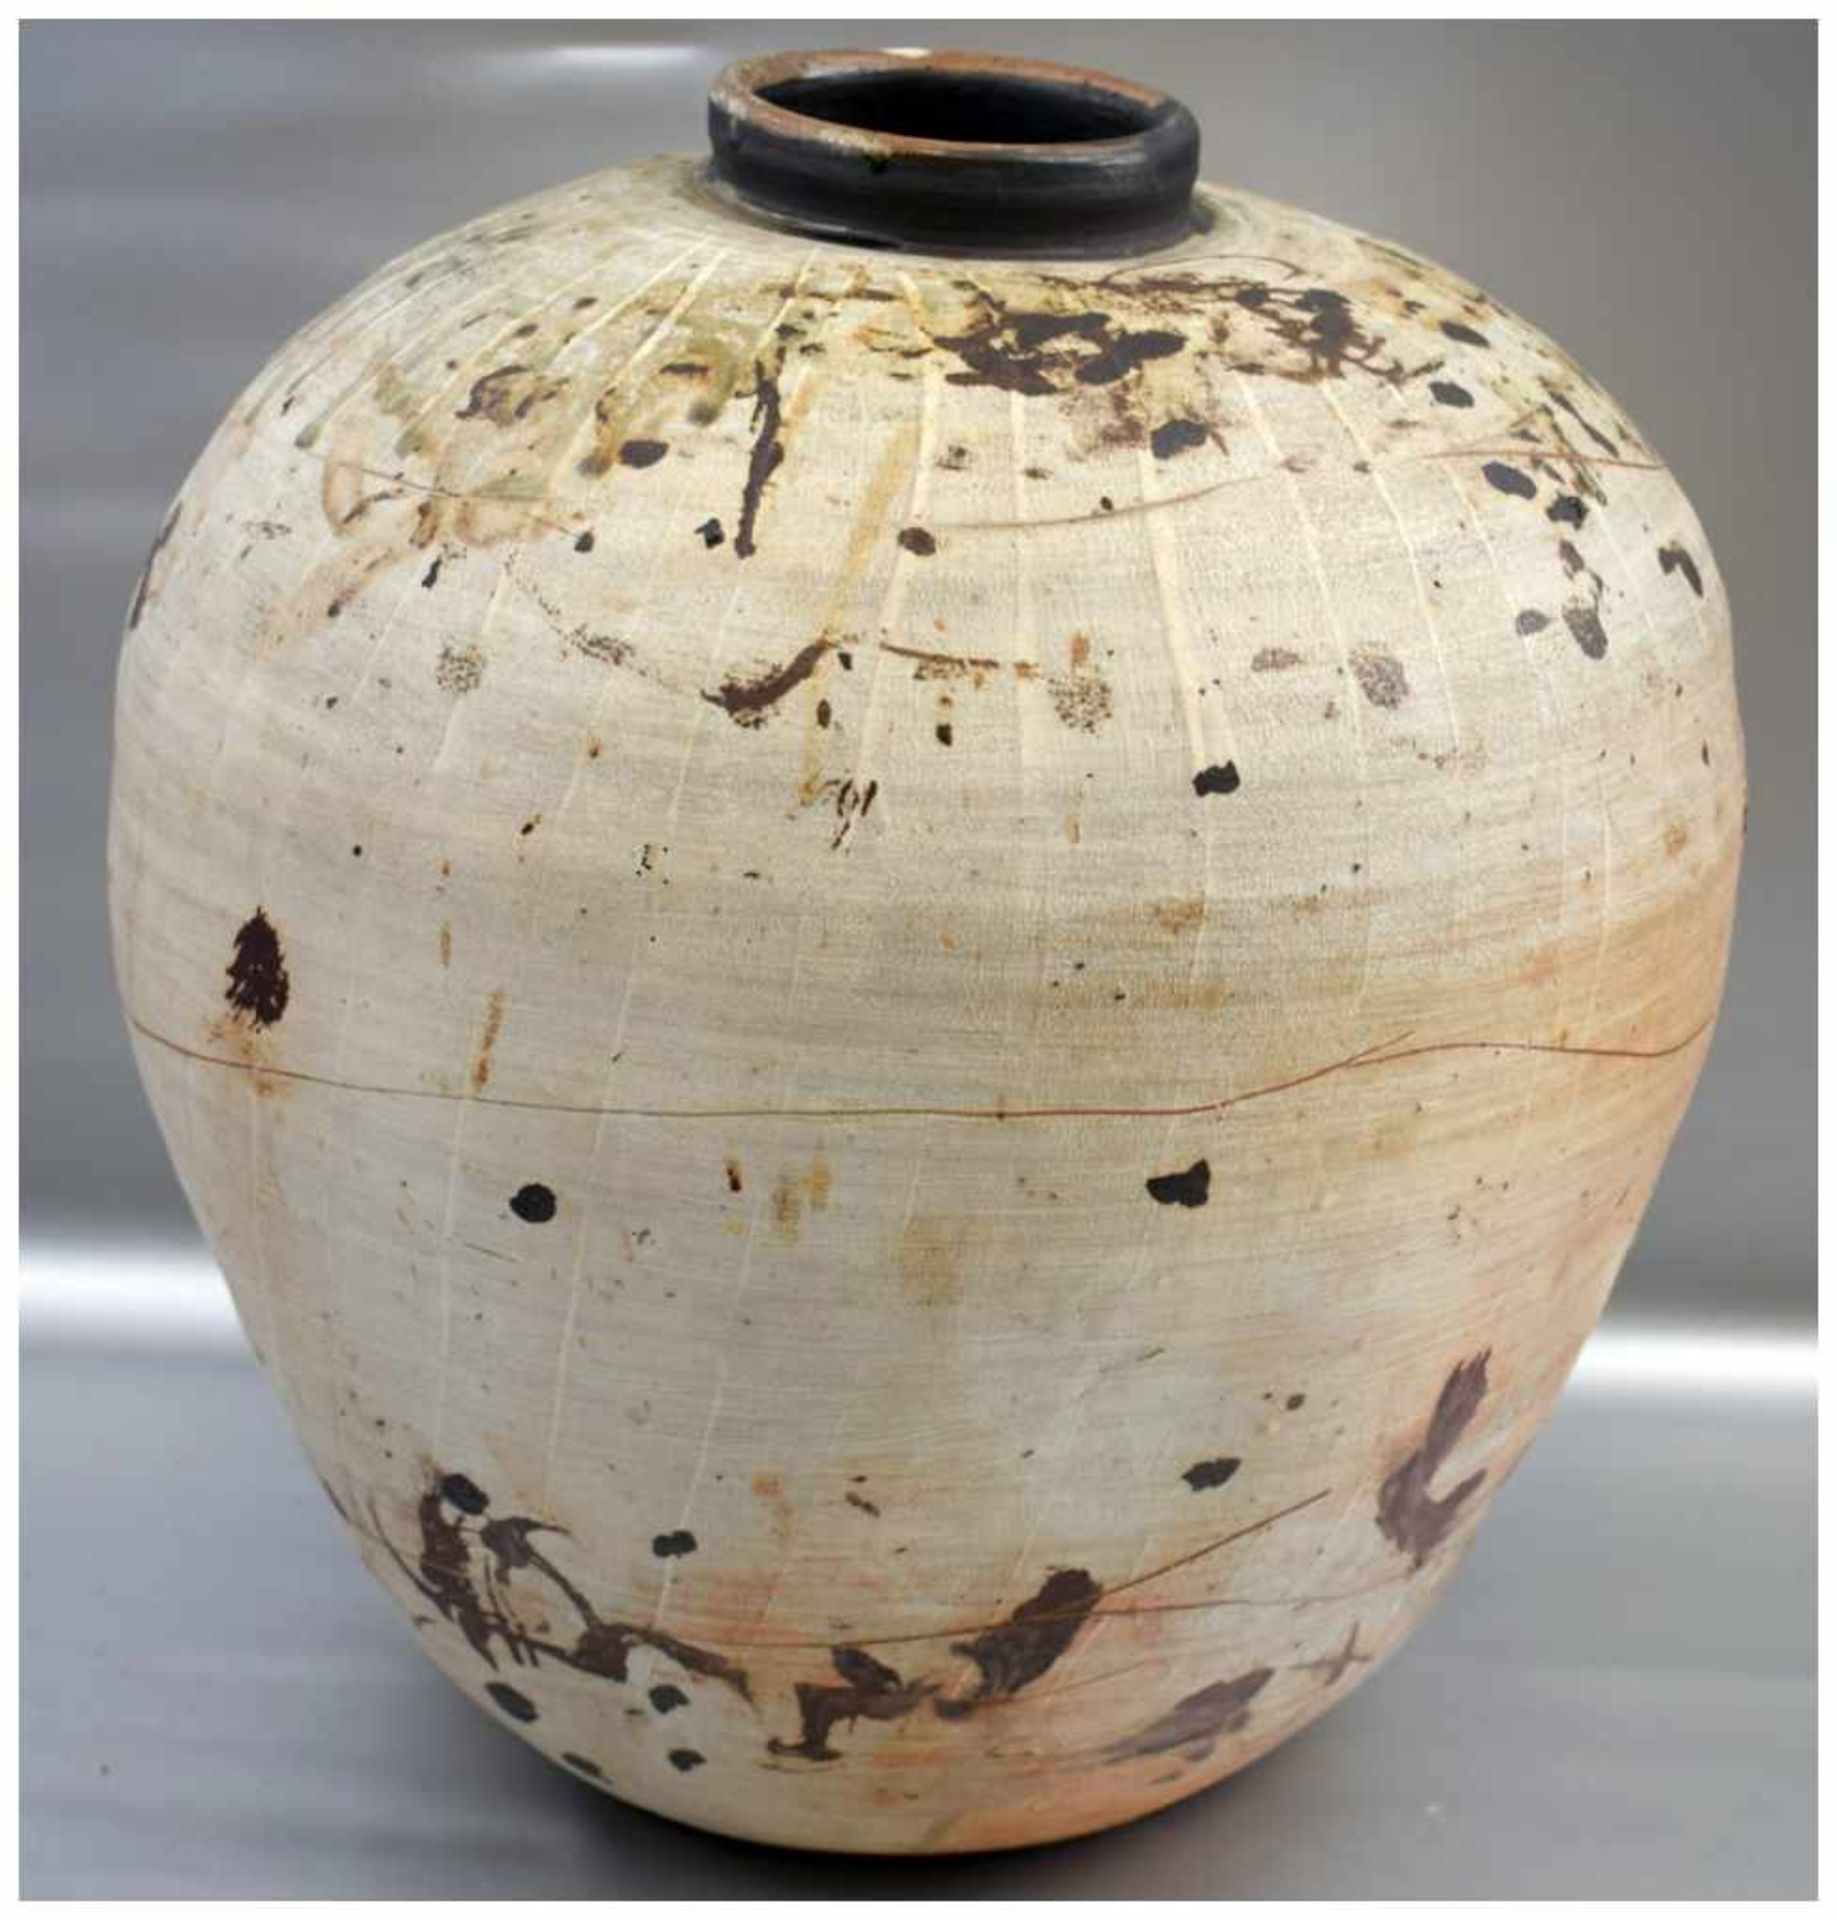 Vase gebaucht, Wandung beige und braun verziert, Haarriss, H 48, Dm 38 cm